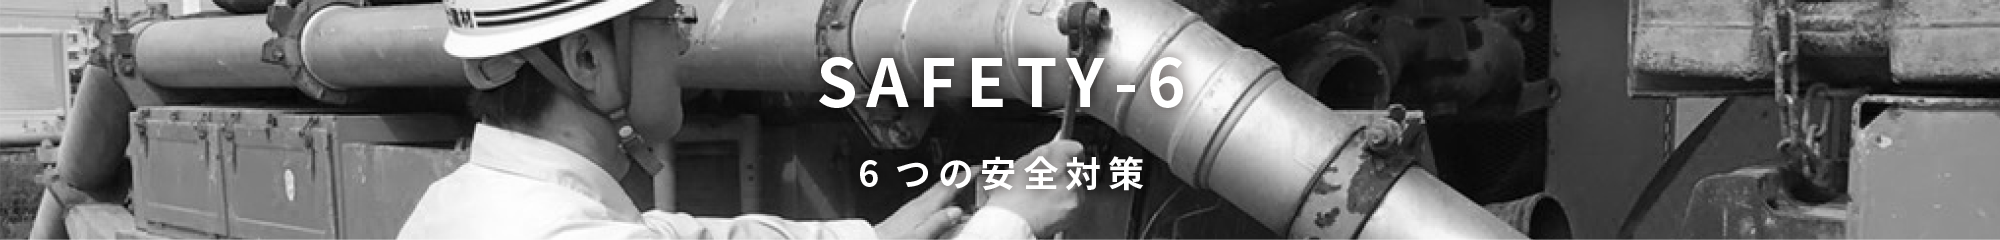 6つの安全対策 SAFETY-6